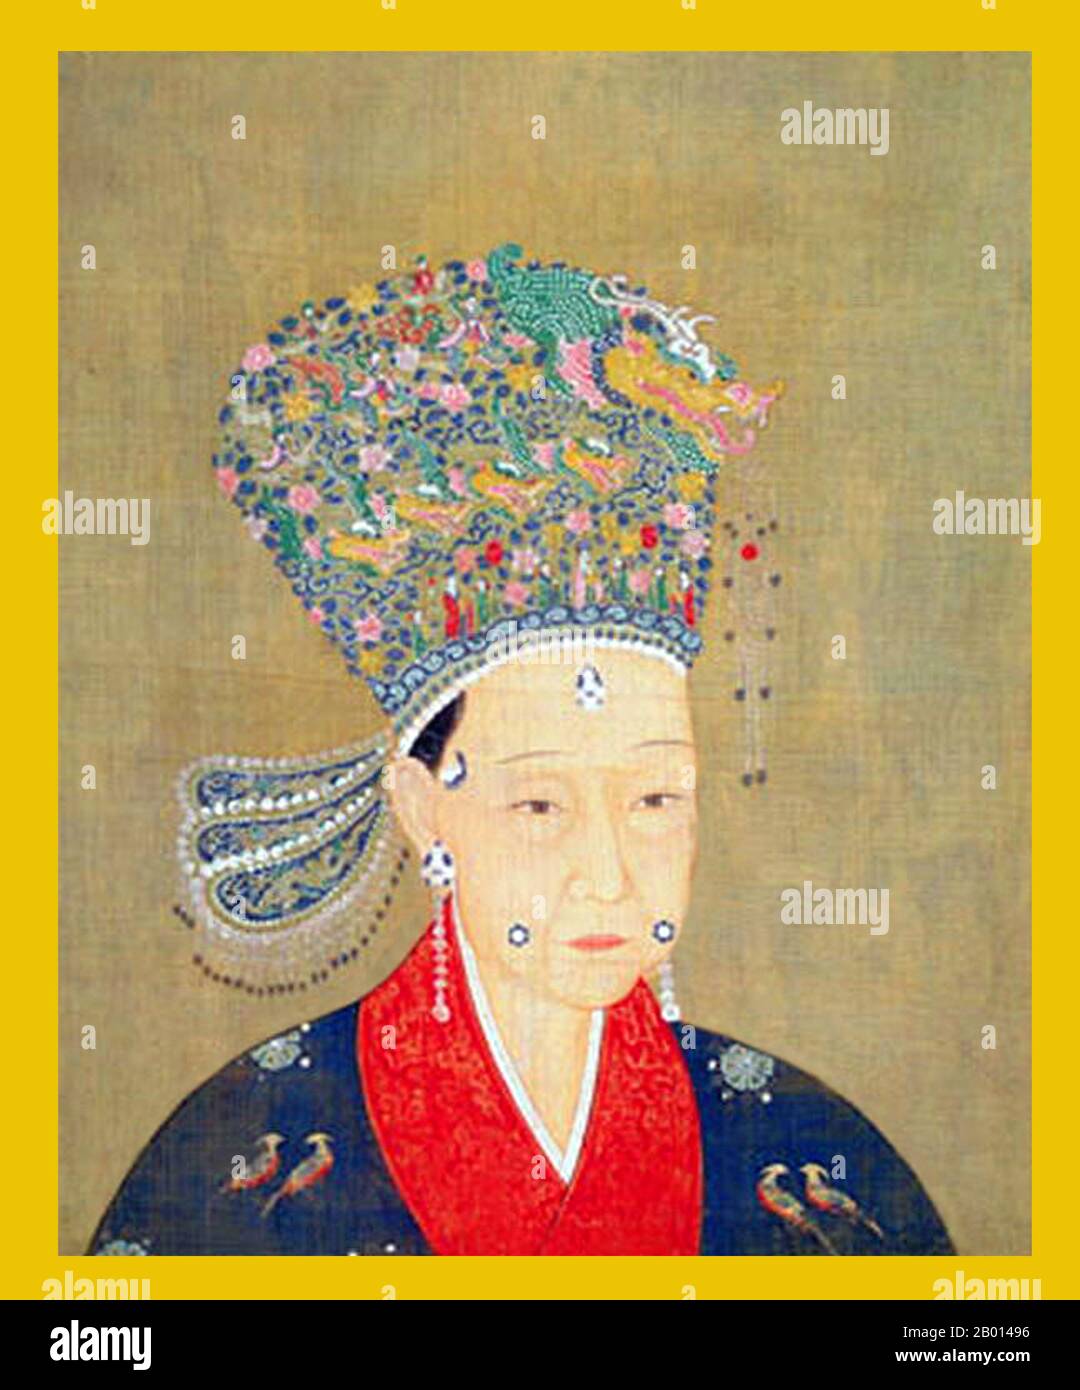 Chine : impératrice Xie (1135 - 13 juin 1207), consort de l'empereur Xiaozong, 11e souverain de la dynastie Song et 2e souverain de la dynastie Song du Sud (r.1162-1189). Peinture de défilement suspendue, 1162-1207. L'impératrice Xie, nom personnel de Sufang et aussi connue sous le nom de Chengsu, a été consort à l'empereur Xiaozong. Servant initialement de concubine de l'empereur Xiaozong, elle fut nommée pour impératrice après la mort de l'impératrice Xia, la deuxième impératrice de l'empereur Xiaozong. Elle n'avait pas d'enfants survivants avec l'empereur, et elle a pris sa retraite avec lui lorsqu'il a abdiqué en 1189. Banque D'Images